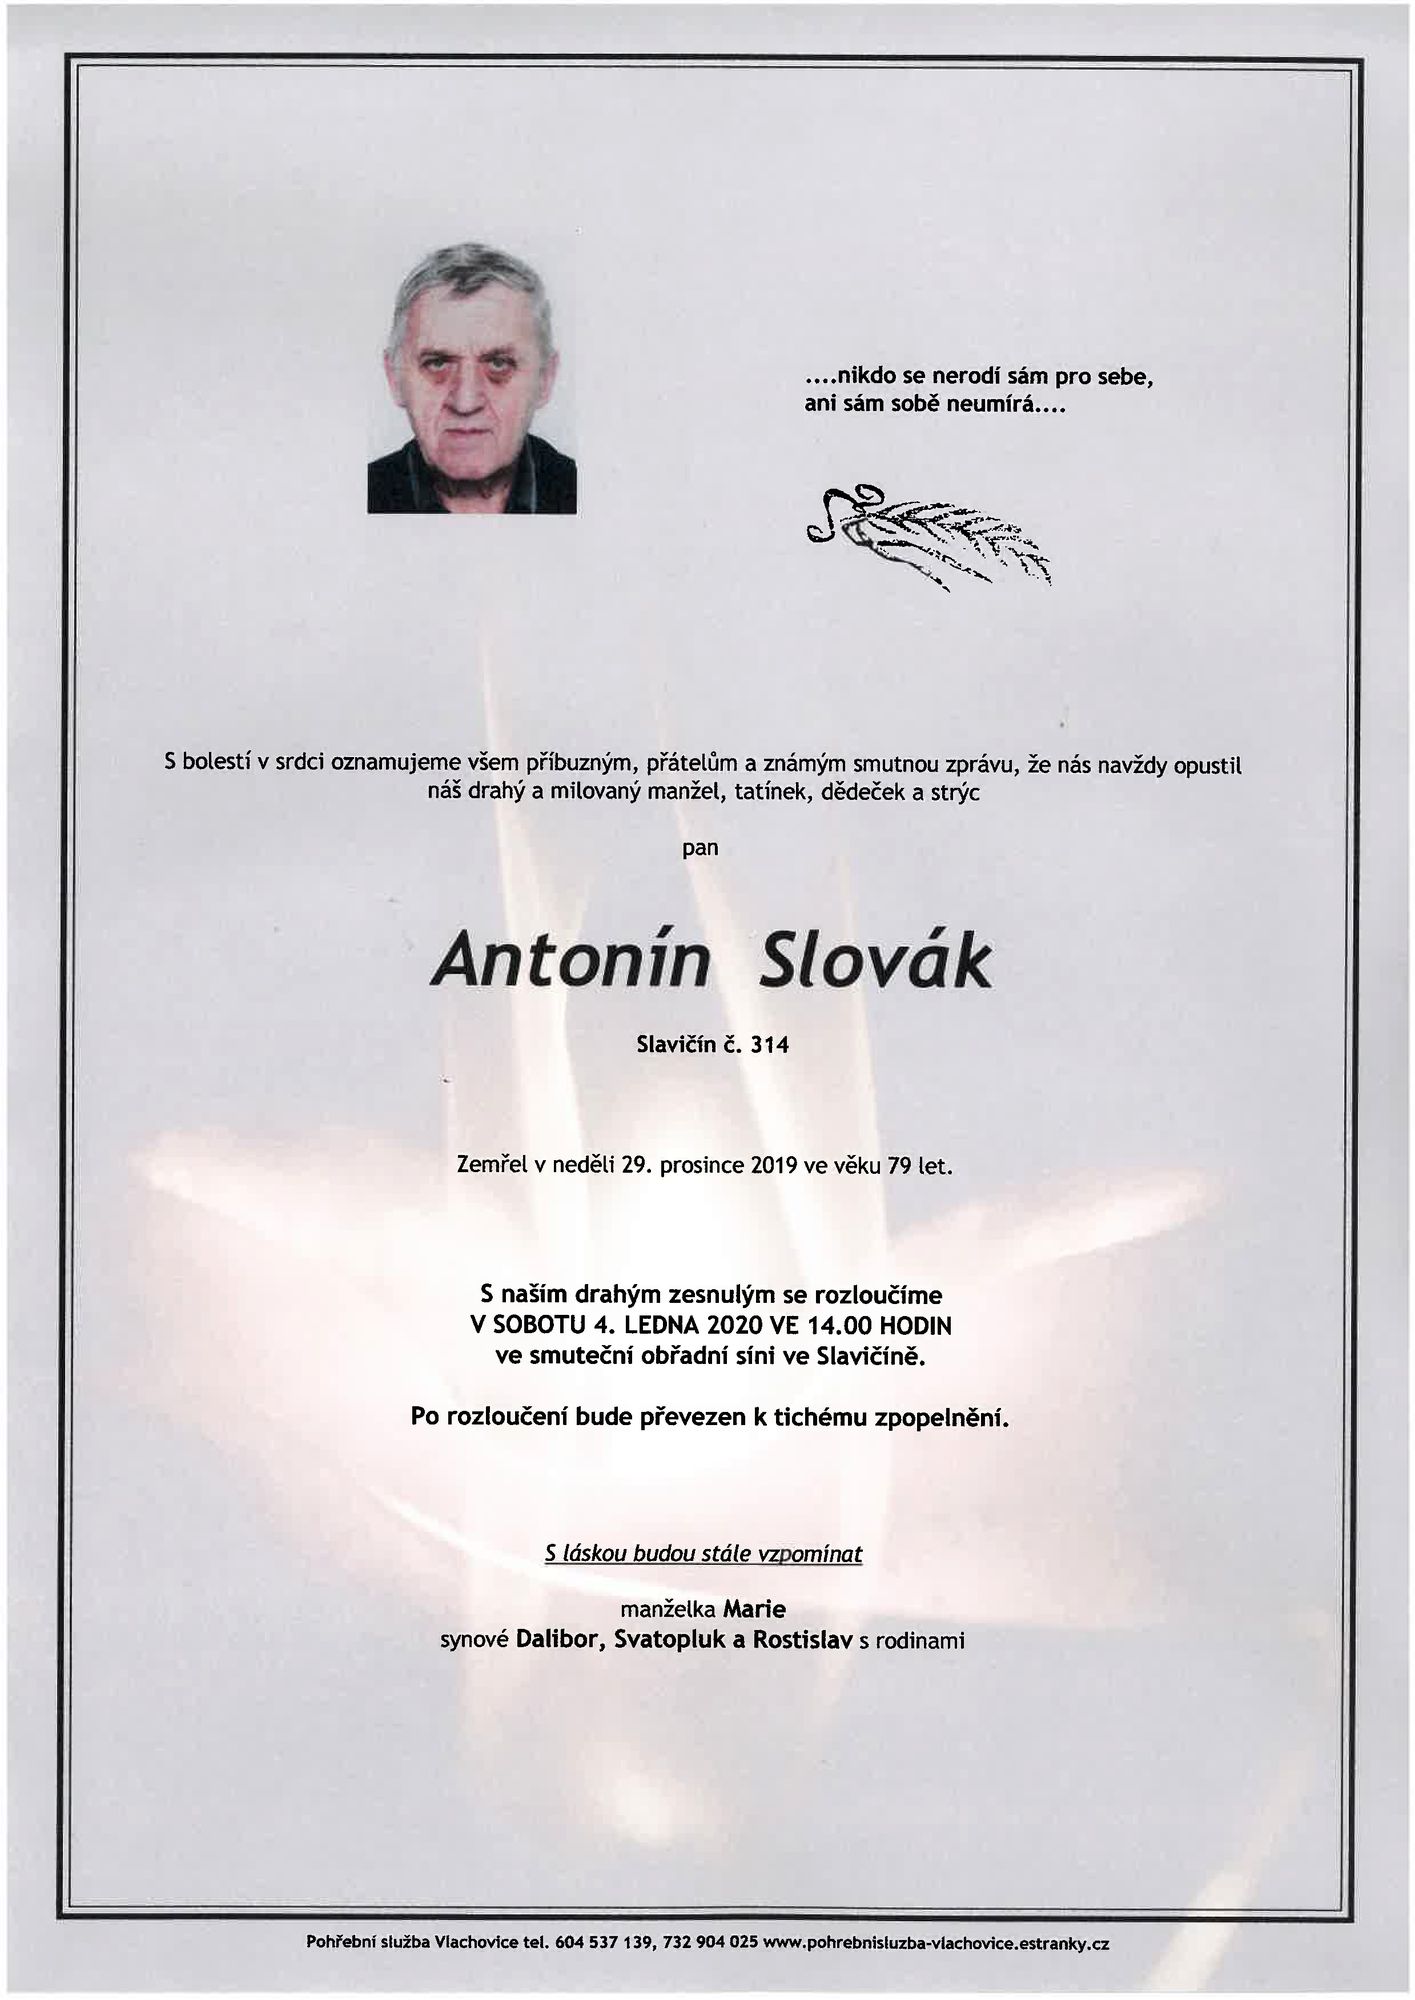 Antonín Slovák